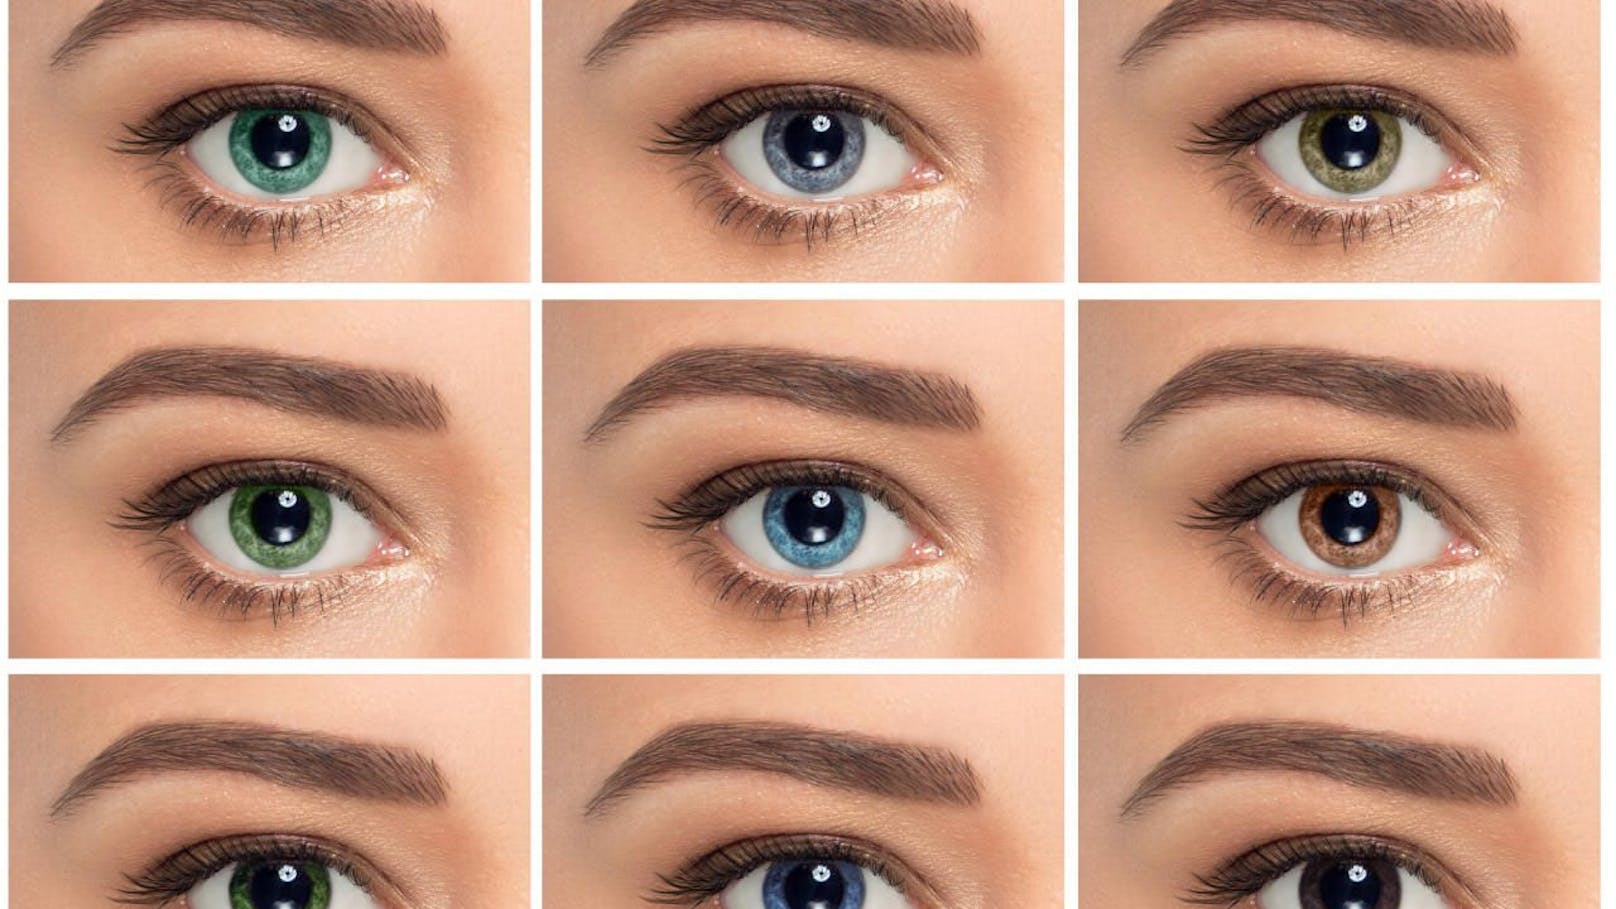 Menschen mit braunen Augen sind offenbar anfälliger für den Winter-Blues.